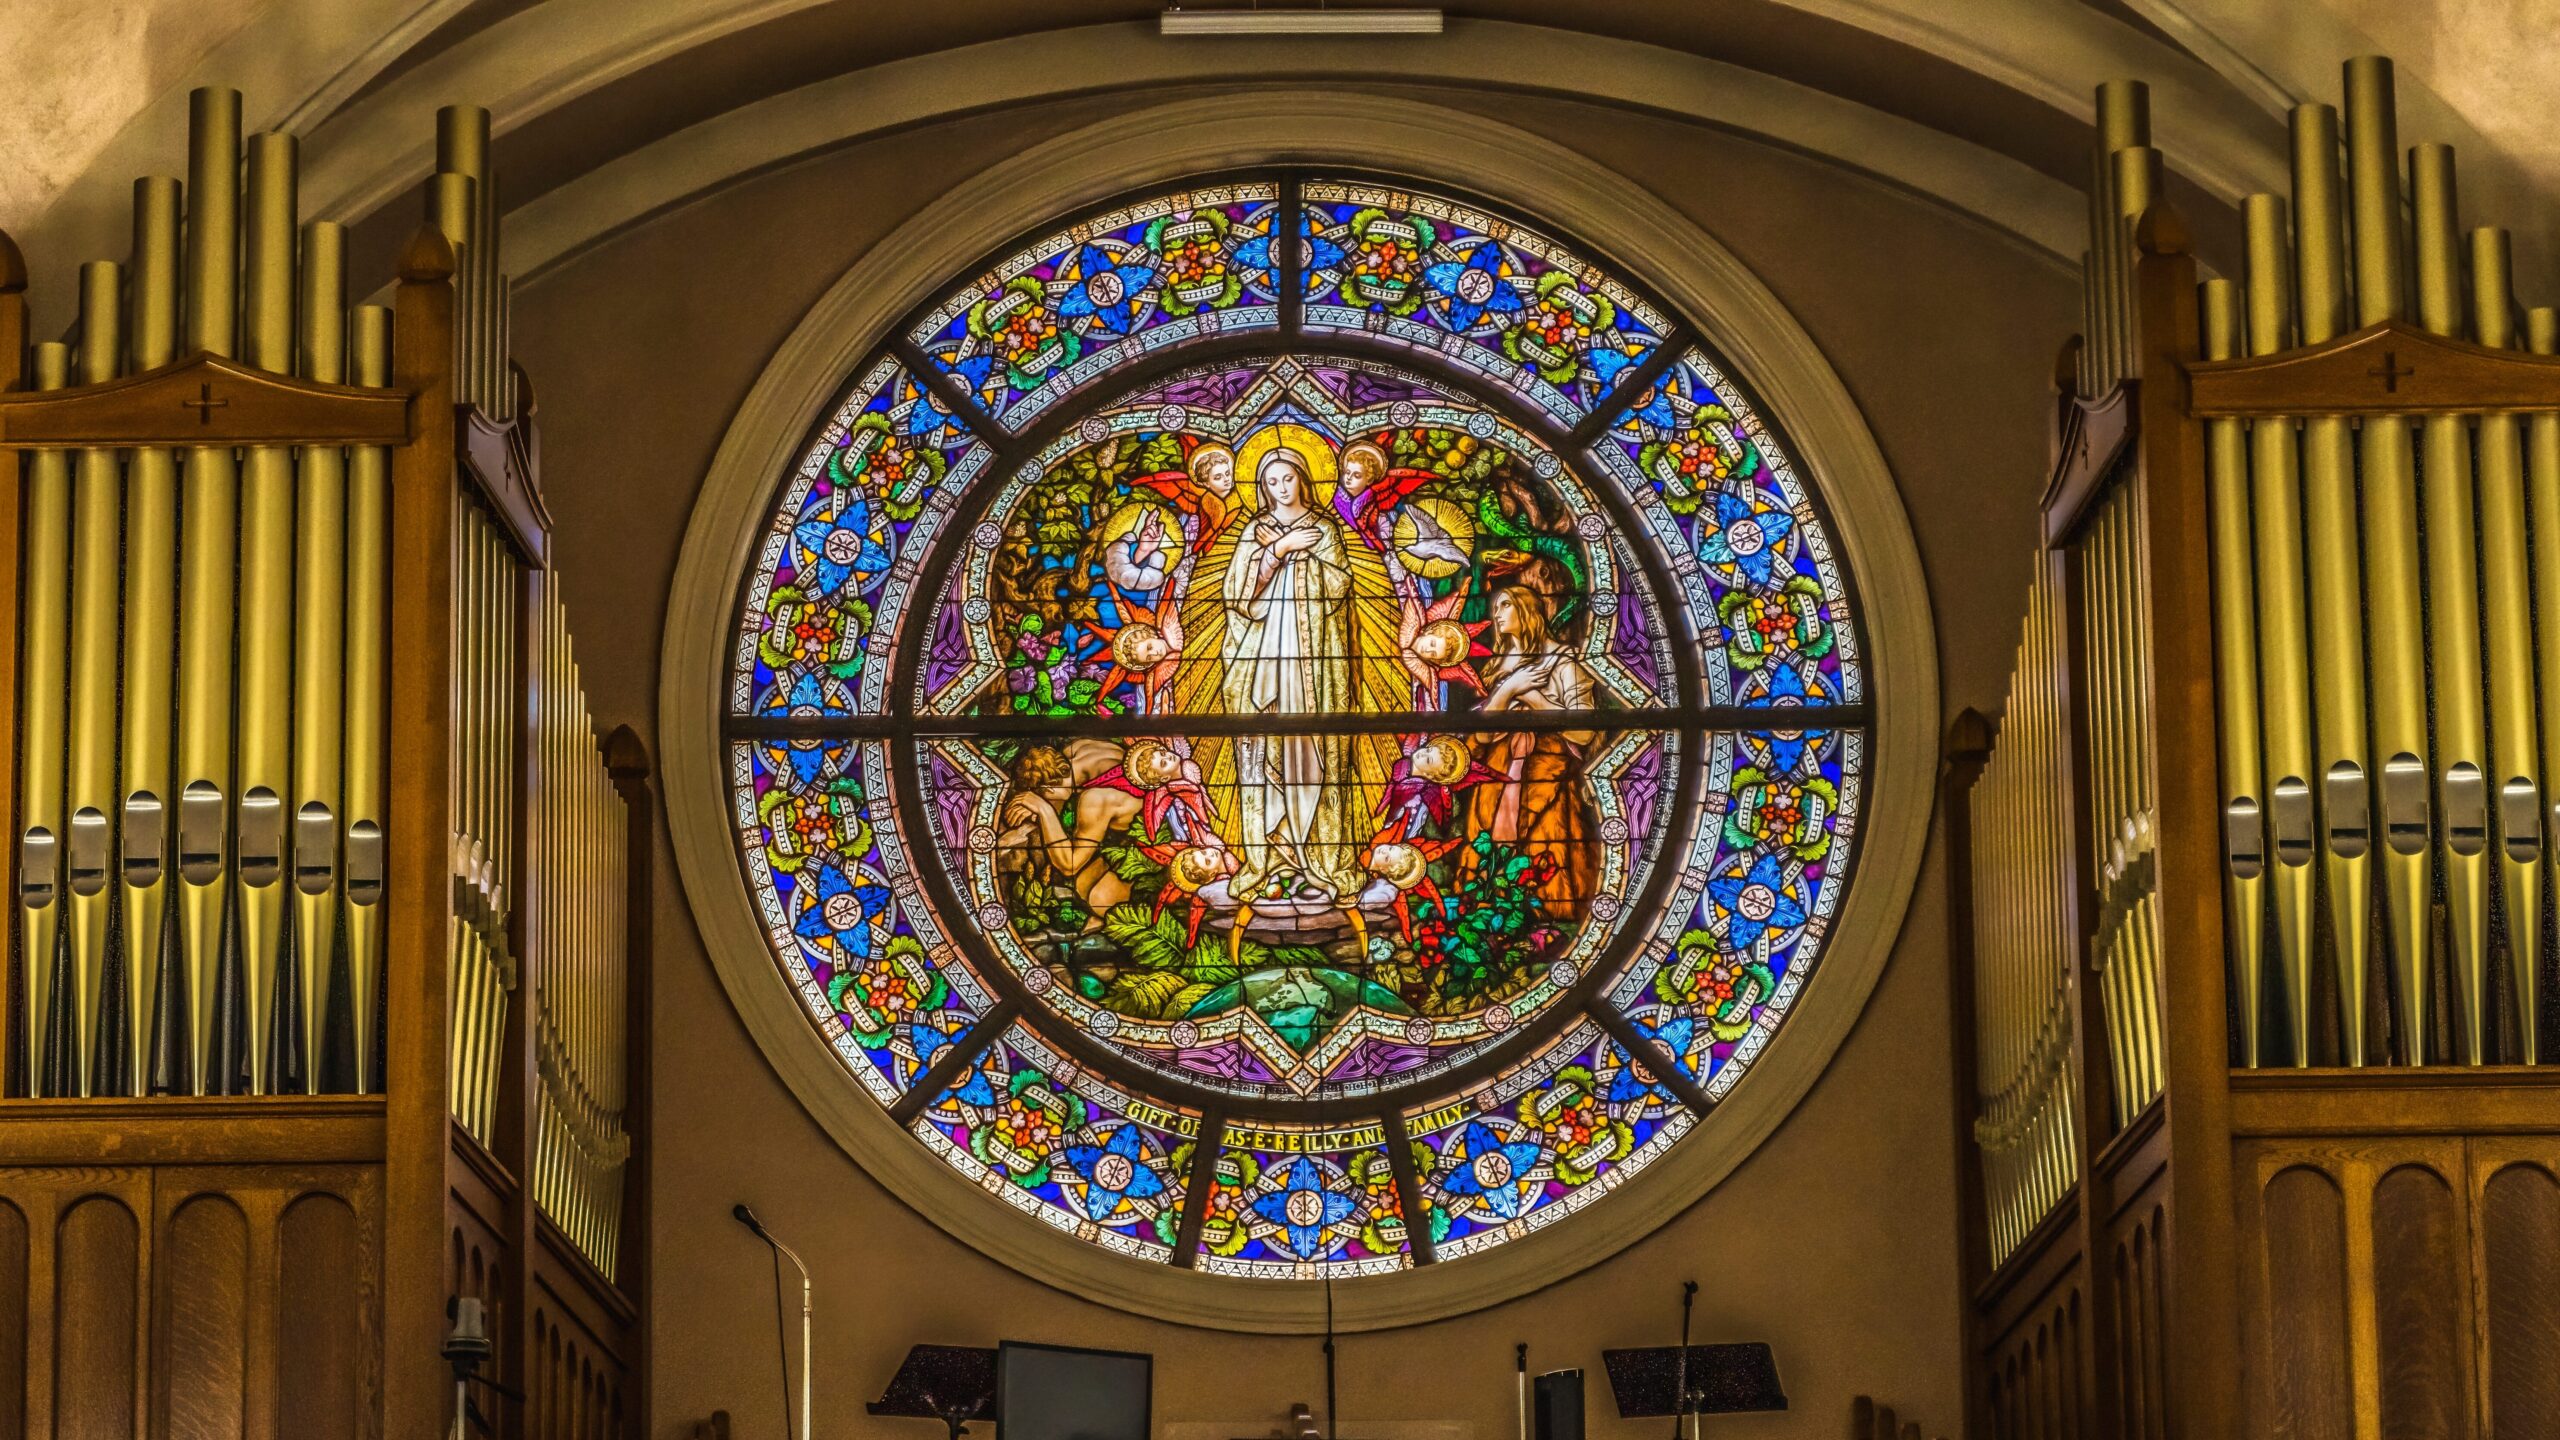 Von Orgel eingerahmtes Kirchenfenster. Das Fenster zeigt Maria.